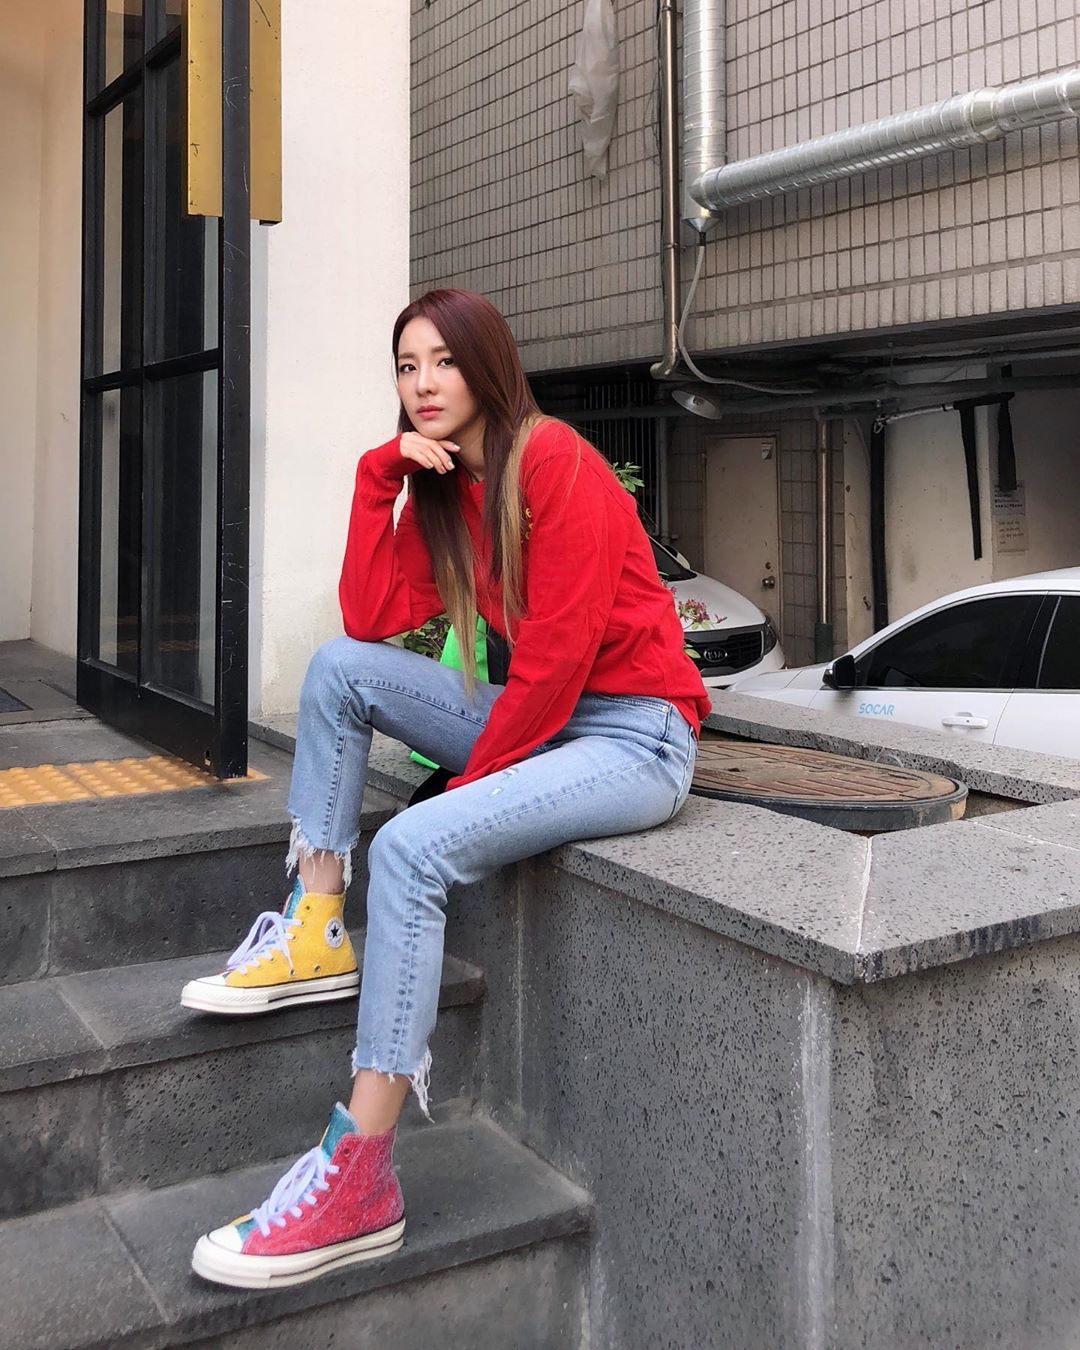 Sao Hàn Dara mặc áo đỏ, quần jeans, mang giày Converse màu đỏ và vàng